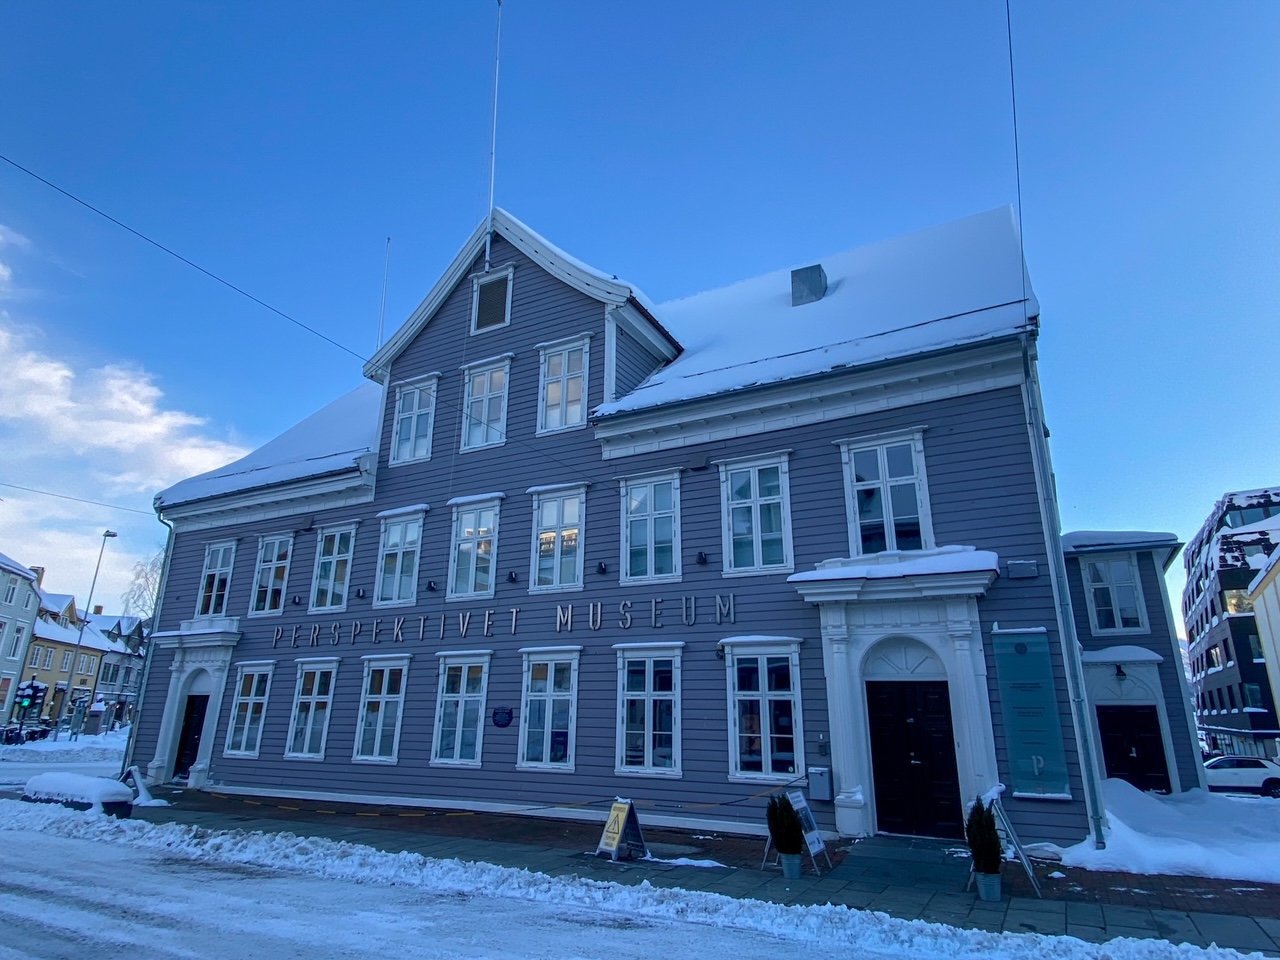 the Perspektivet Museum in Tromsø, Norway